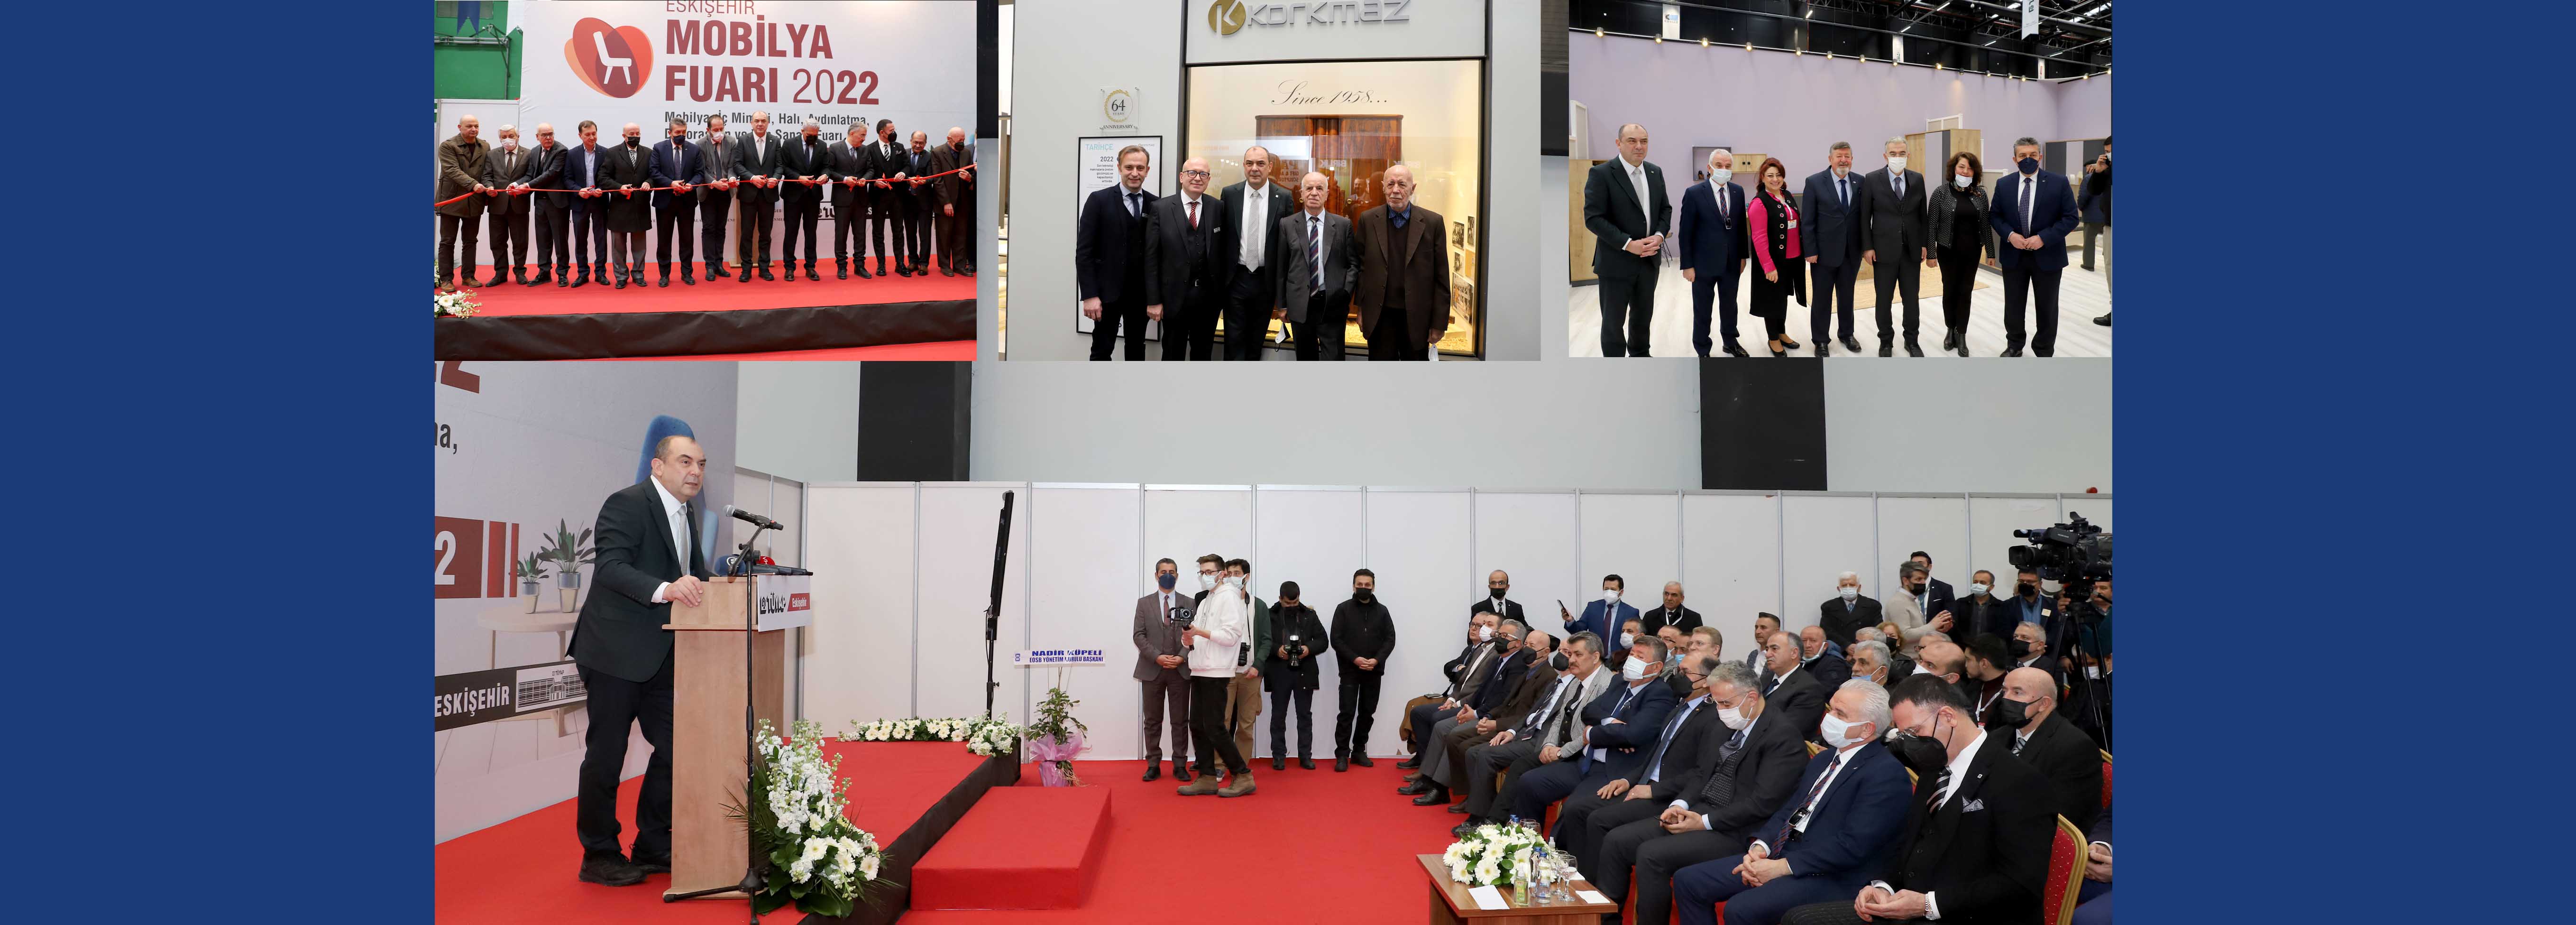 Eskişehir Mobilya Fuarı 2022 kapılarını açtı